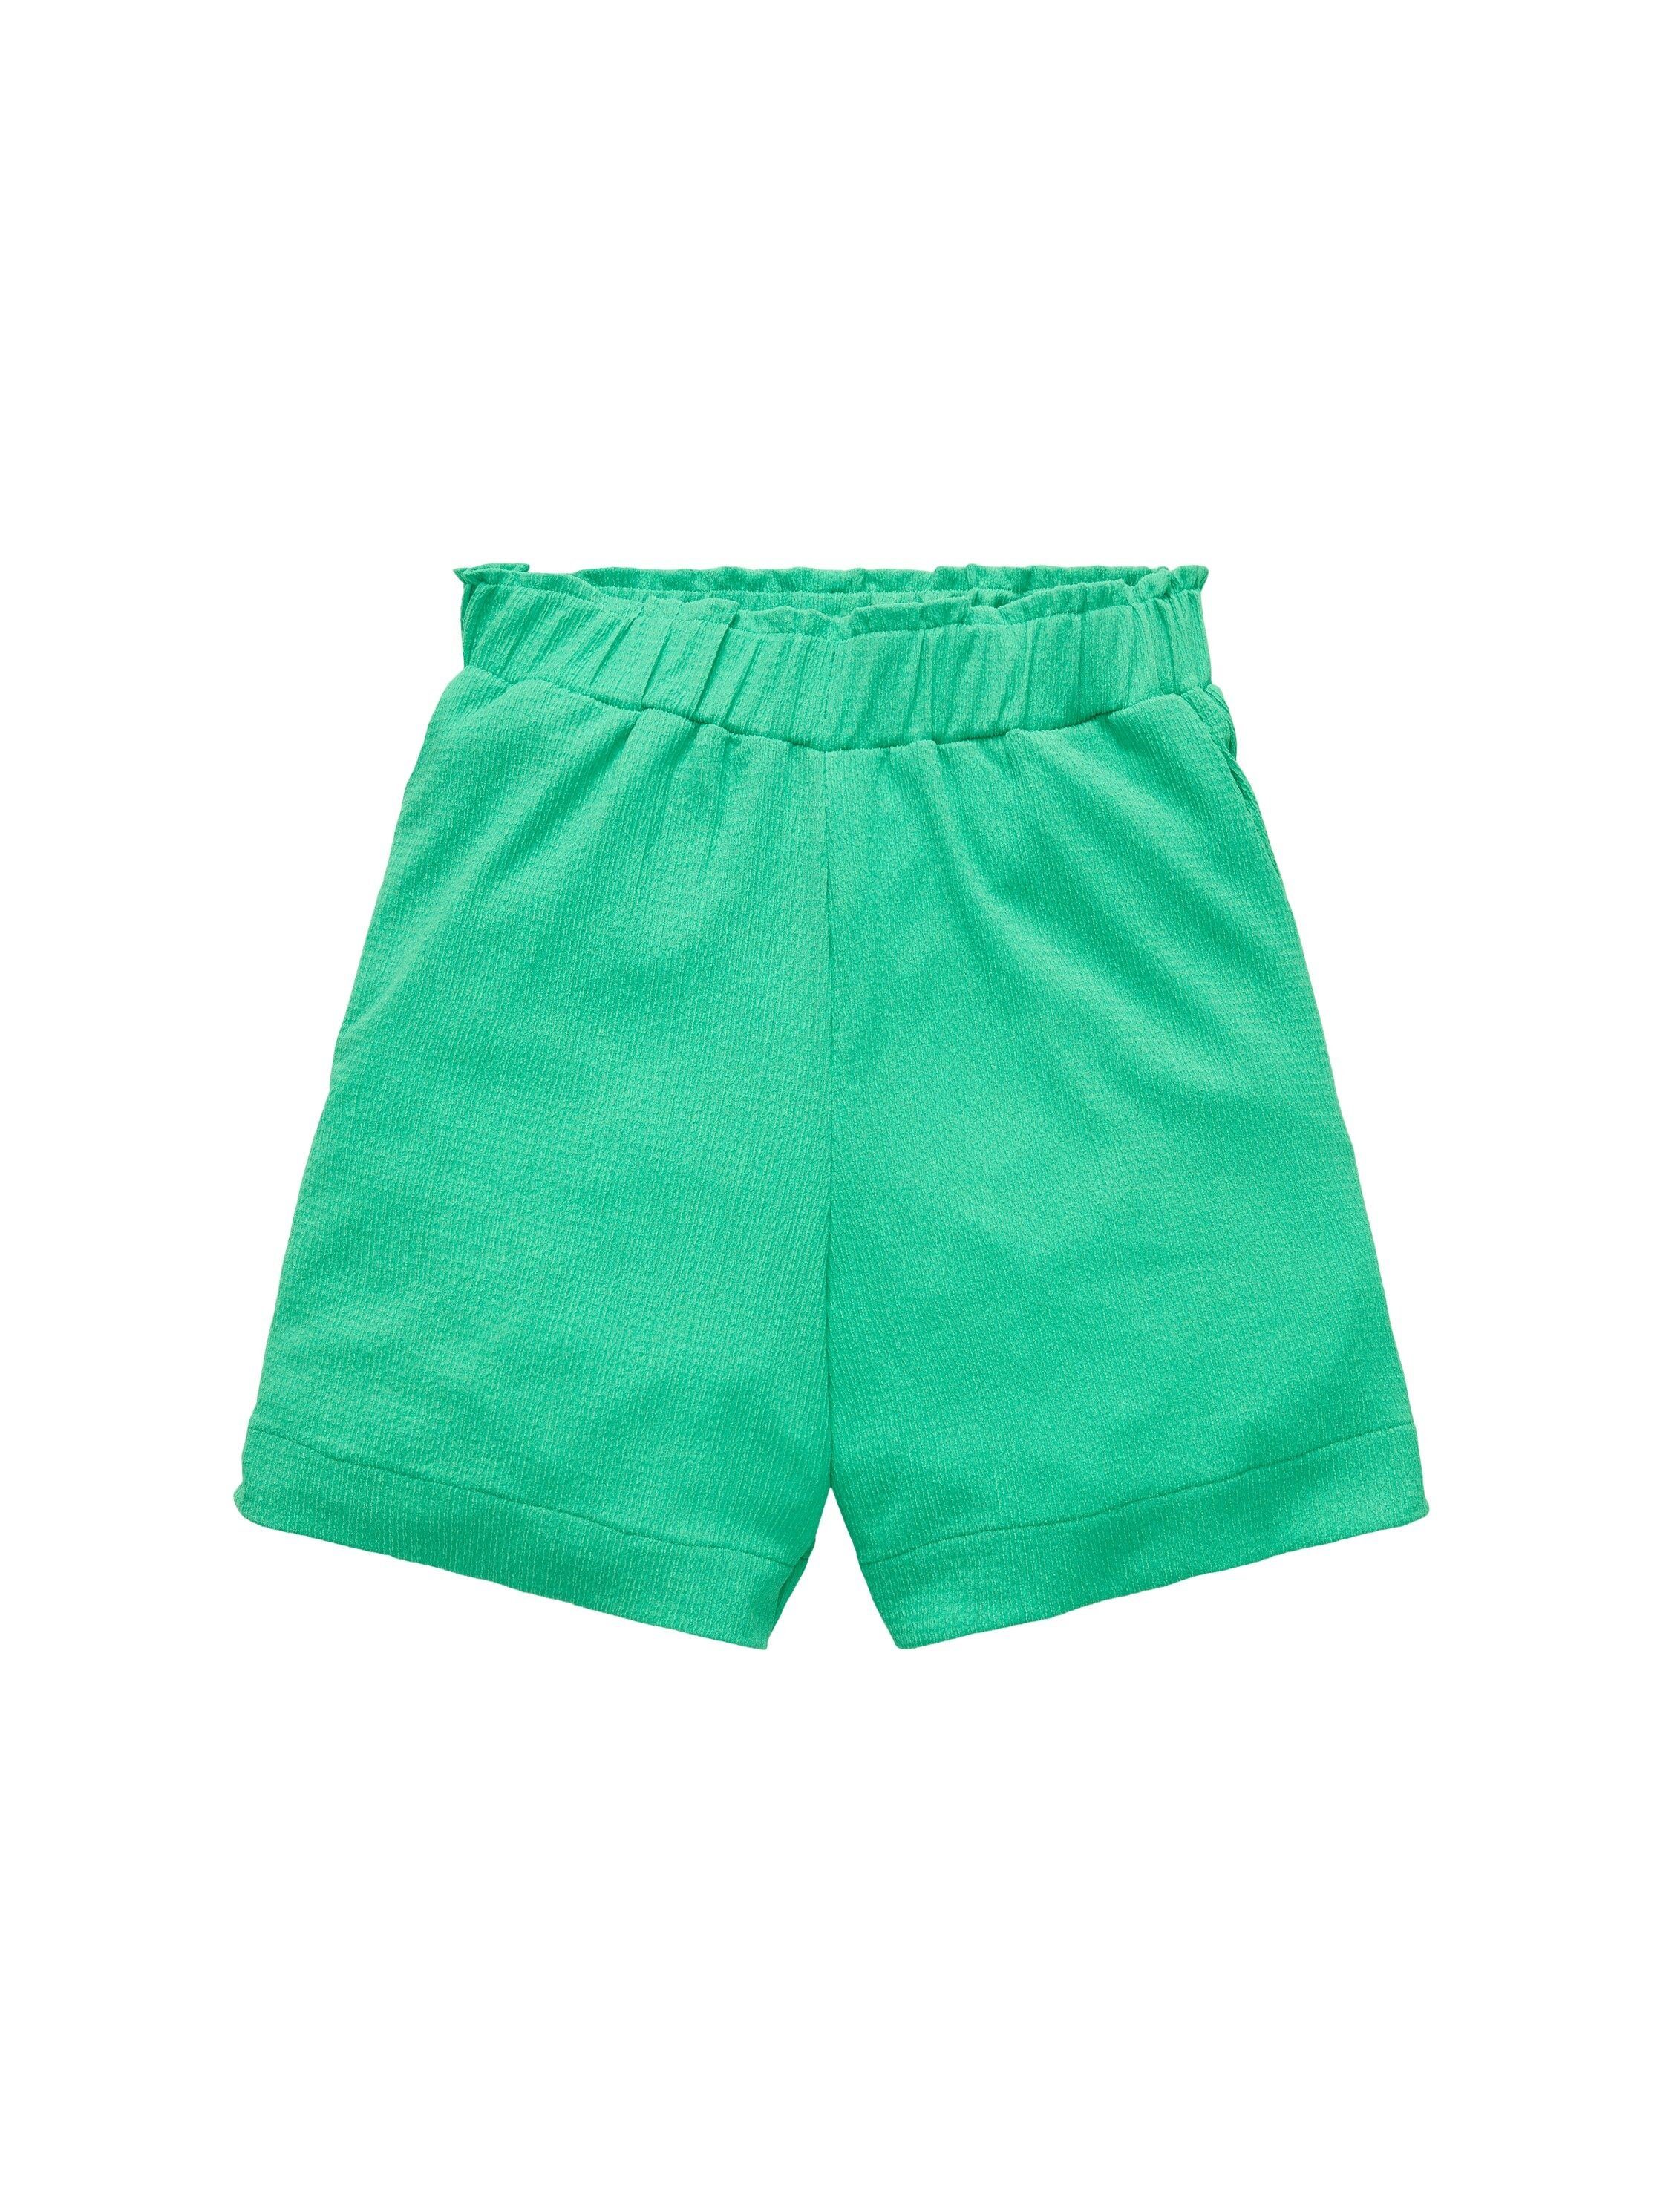 Denim TOM TAILOR TOM green Shorts TAILOR light vibrant